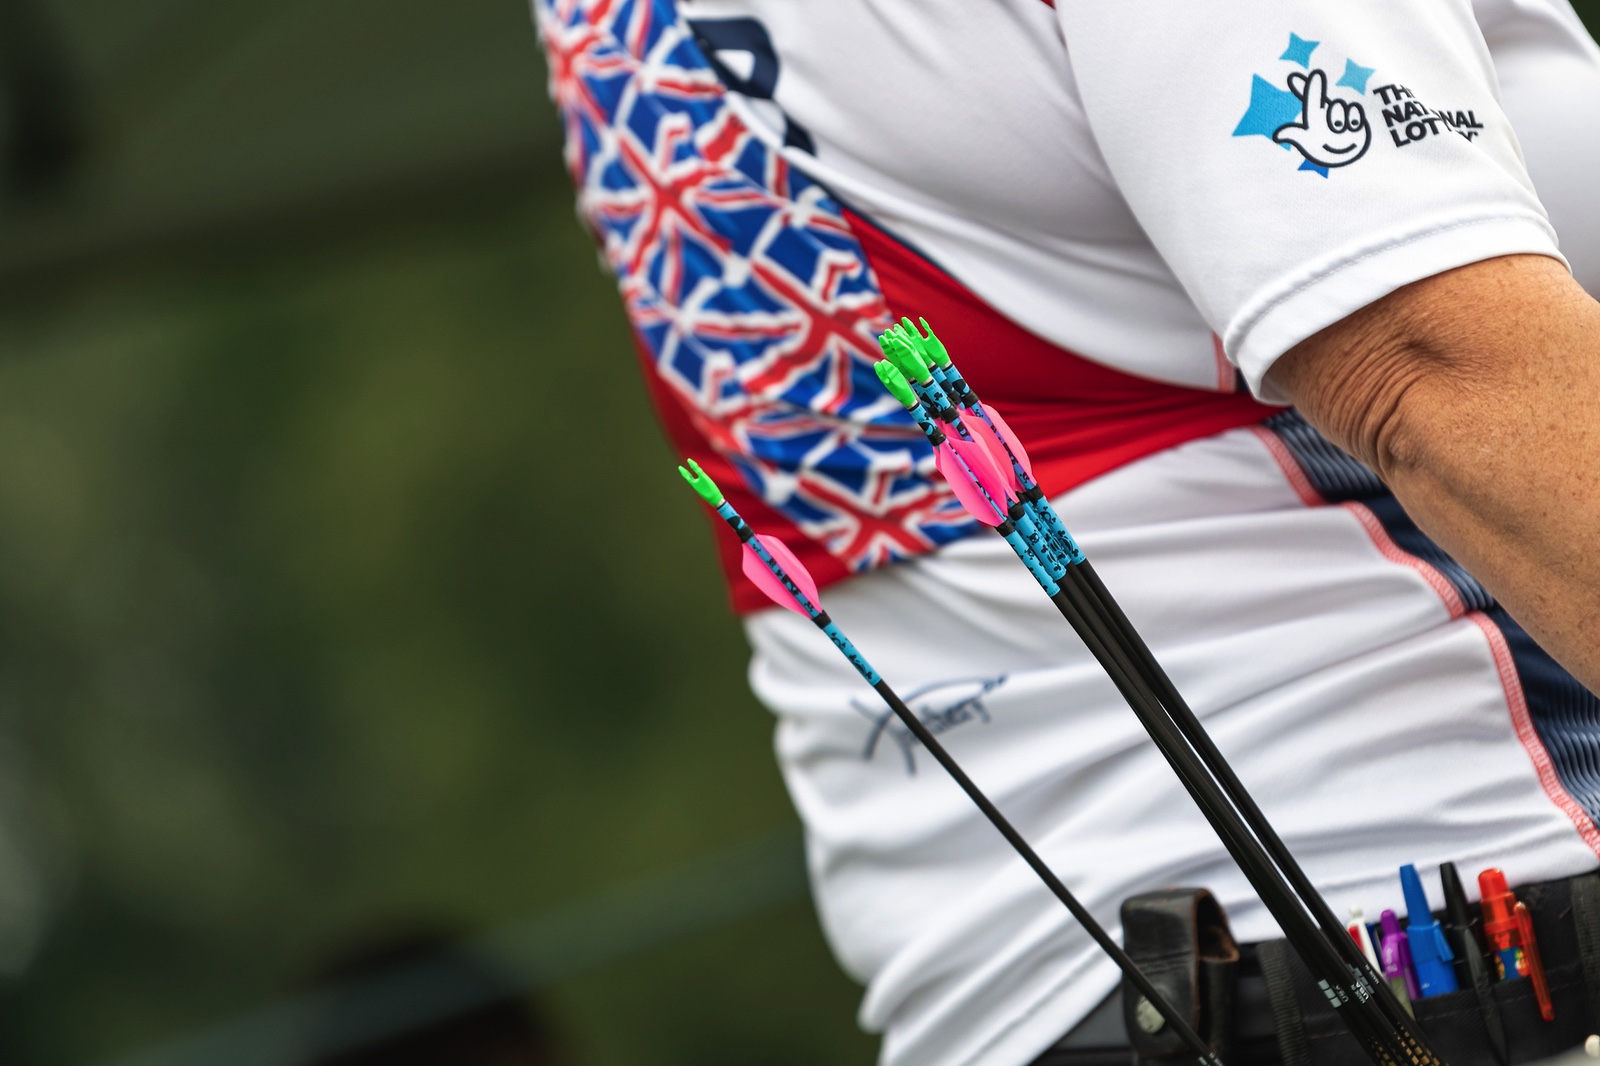 Para Archery European Cup Leg 1 - Qualification